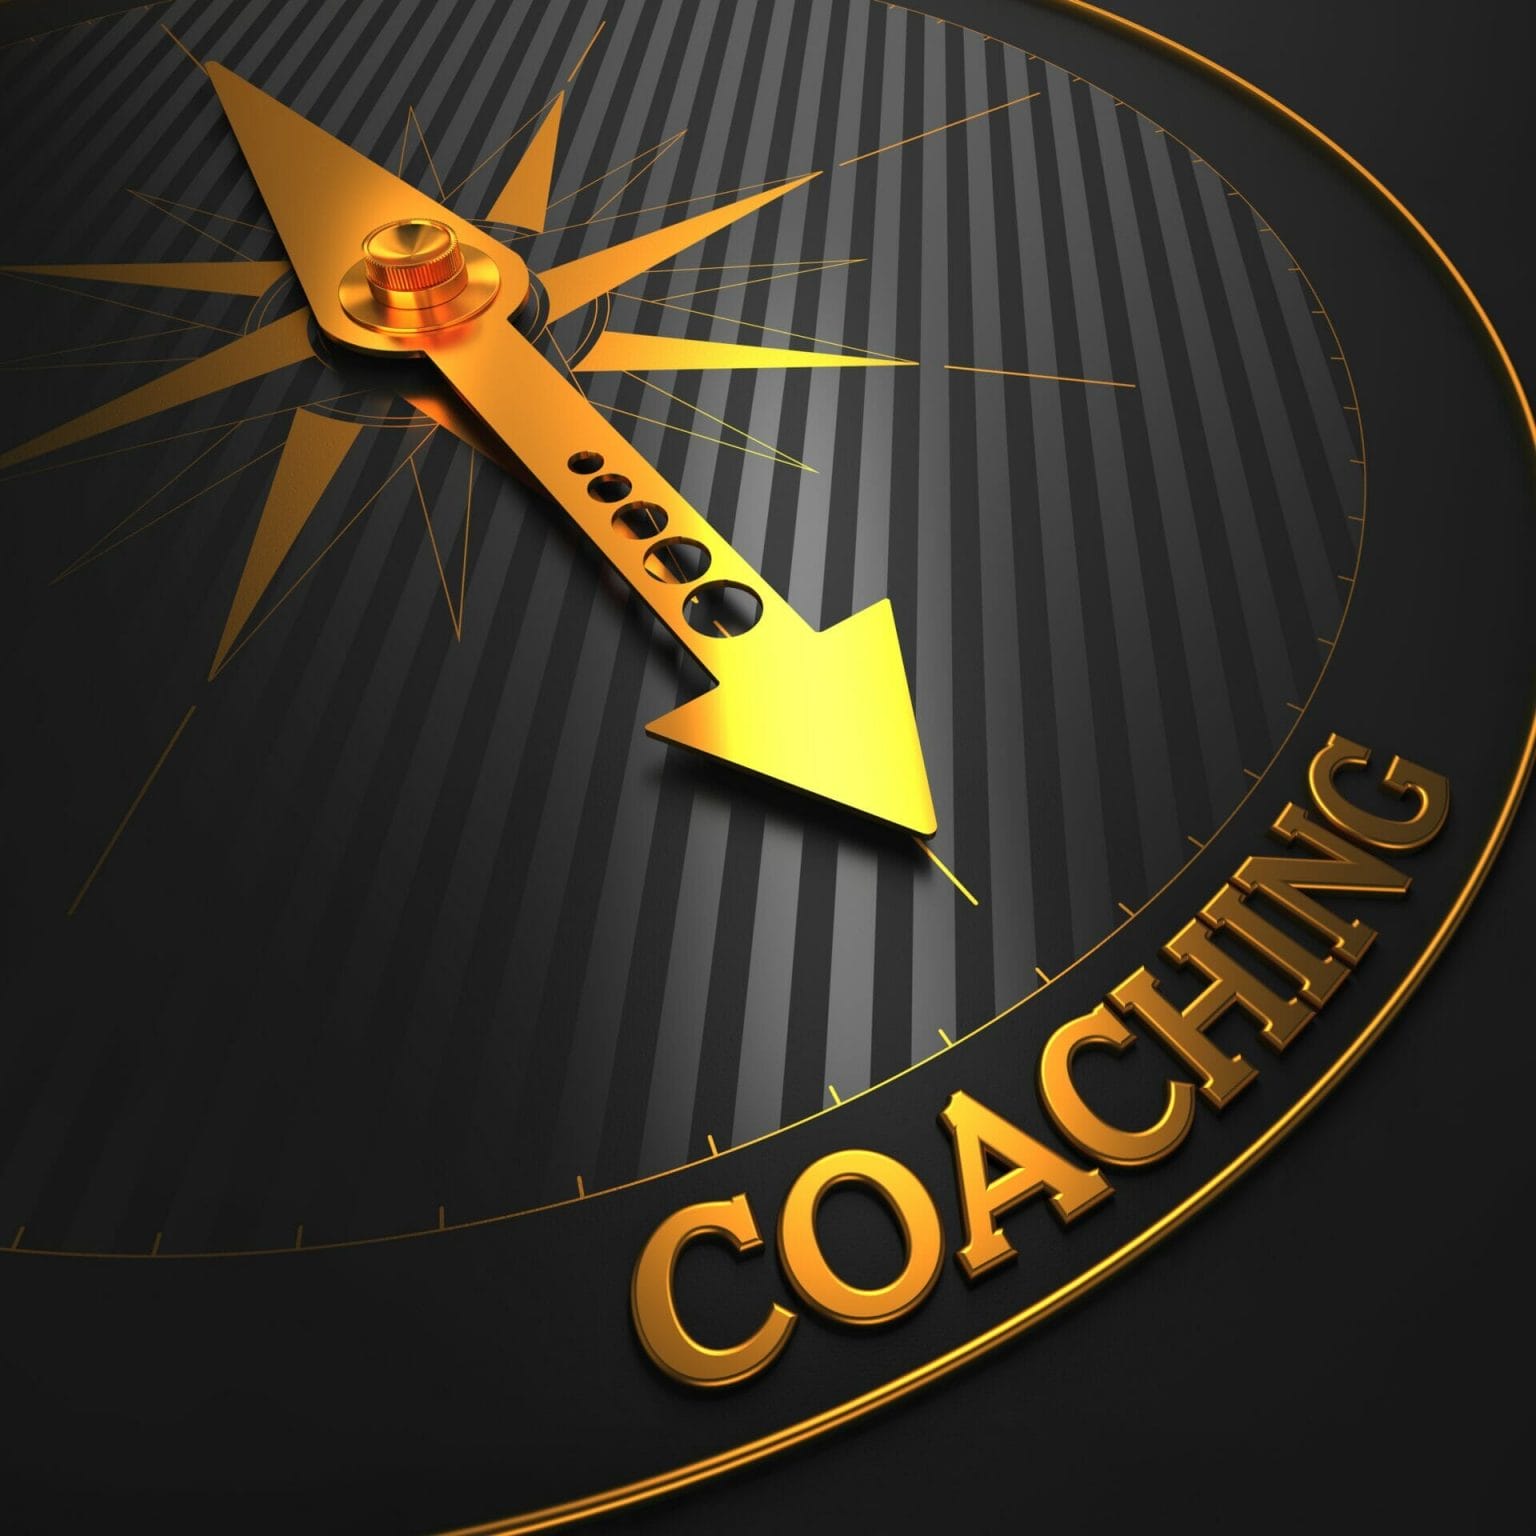 Executive Coaching/Advisory